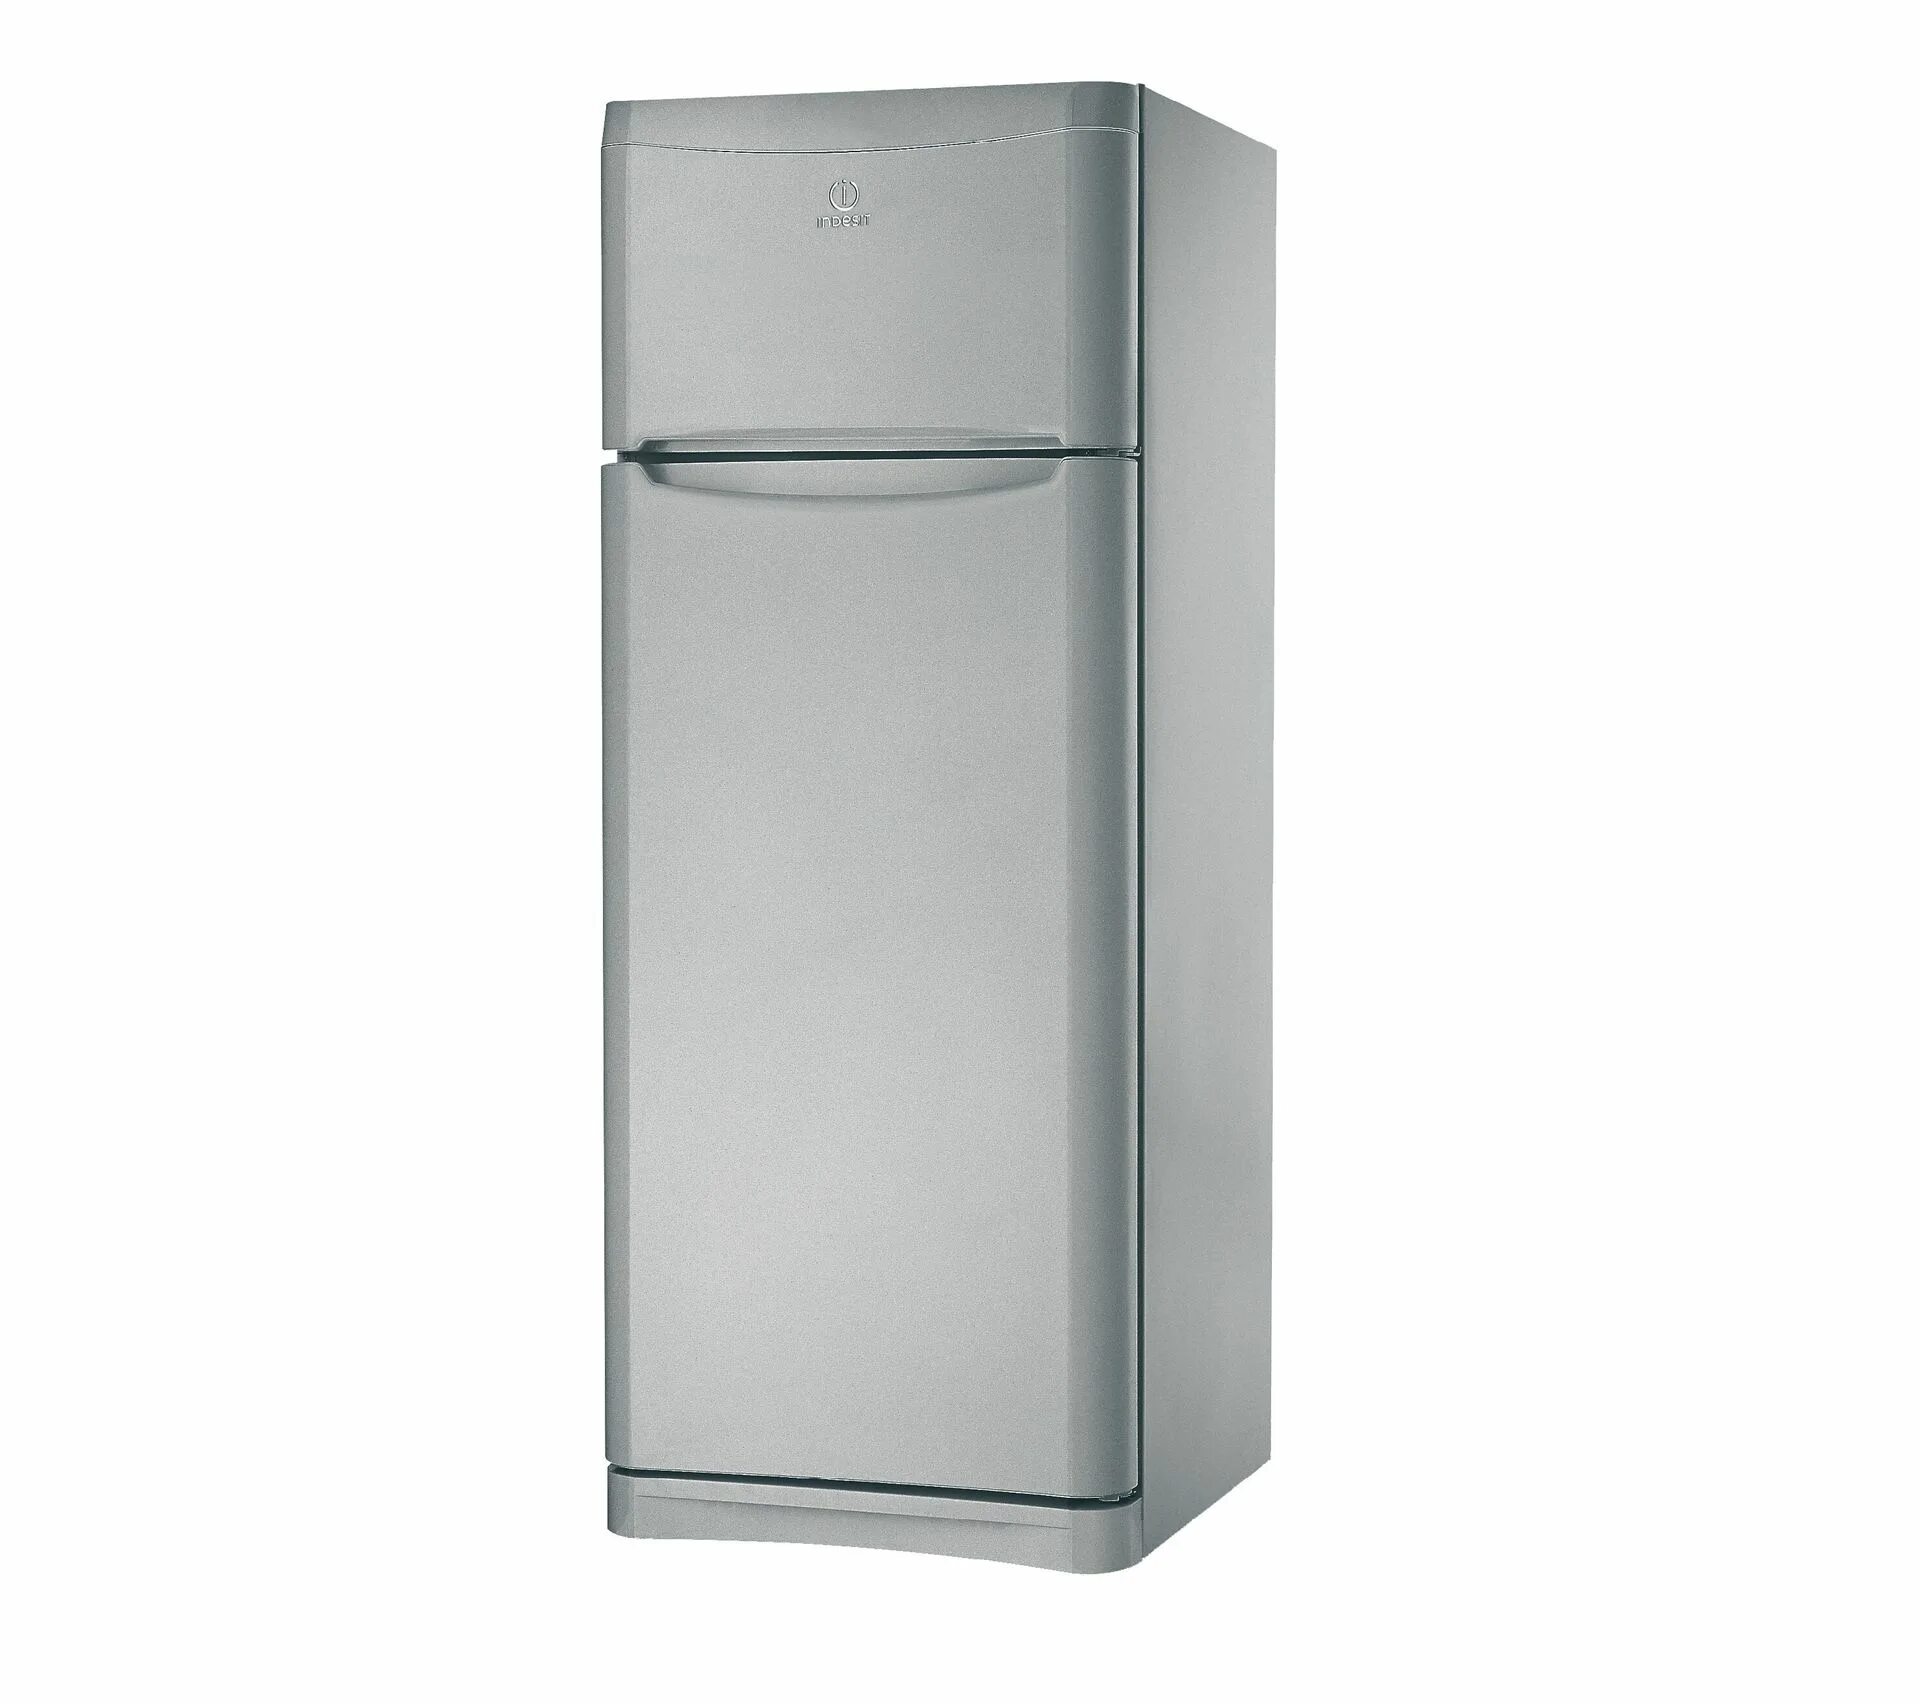 Индезит челябинск. Холодильник Индезит ноу Фрост. Индезит no Frost холодильник 188 см.